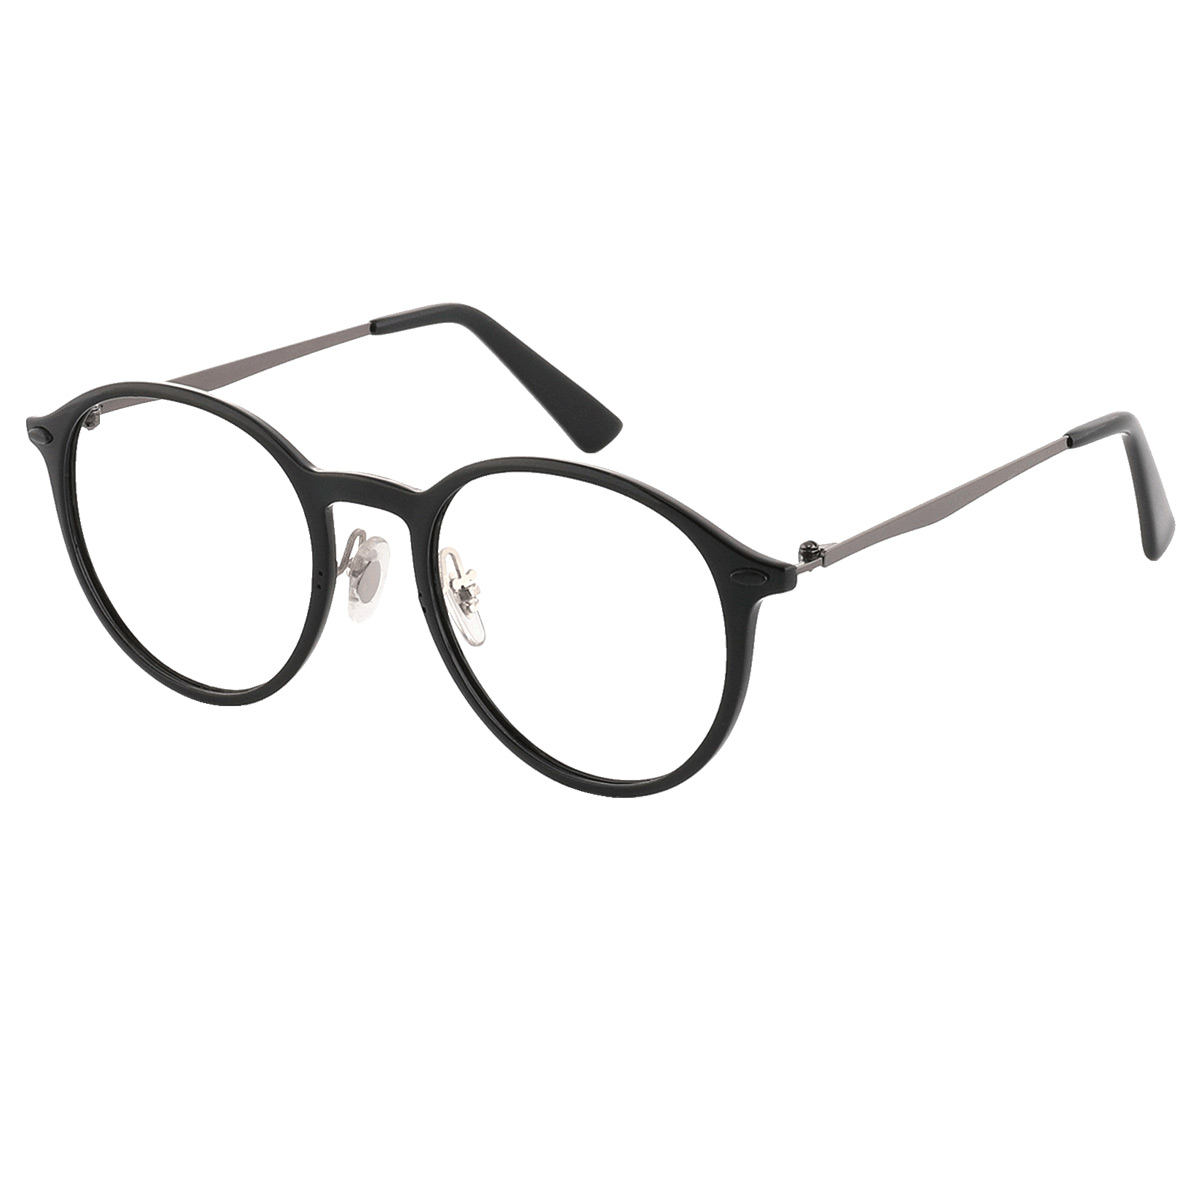 Hancock - Oval Black-Silver Reading Glasses for Men & Women